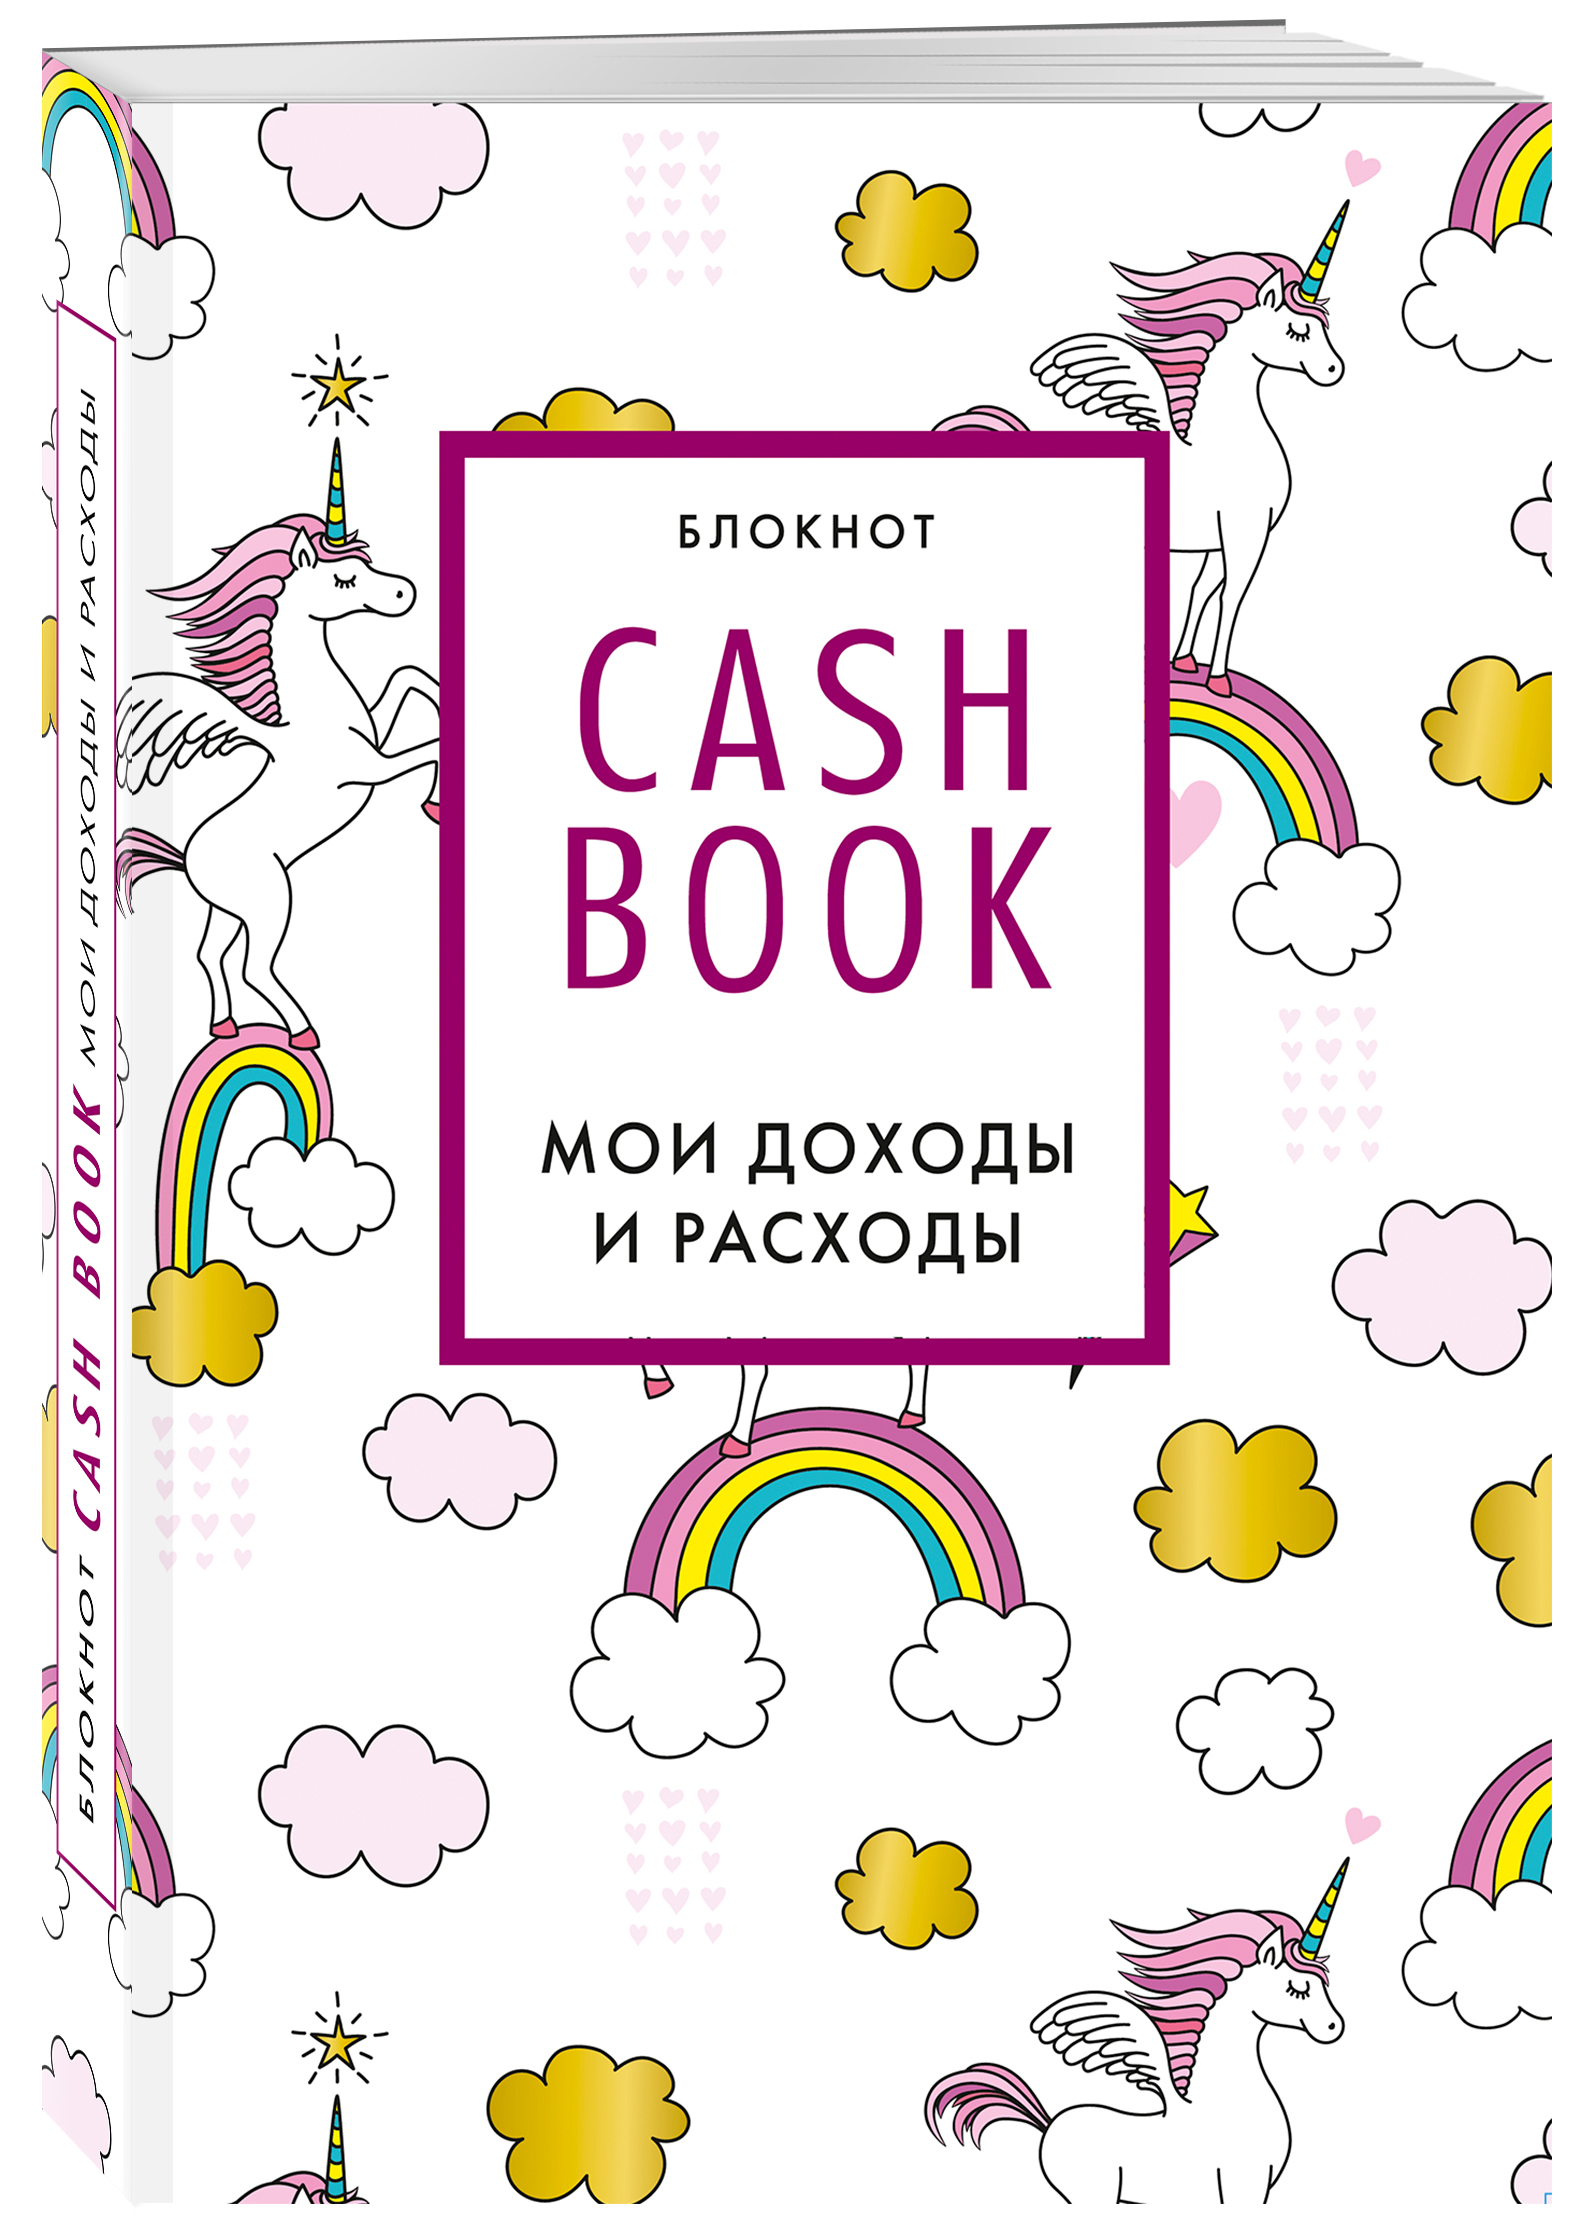 Блокнот CashBook Мои доходы и расходы (8-е издание / Единороги)